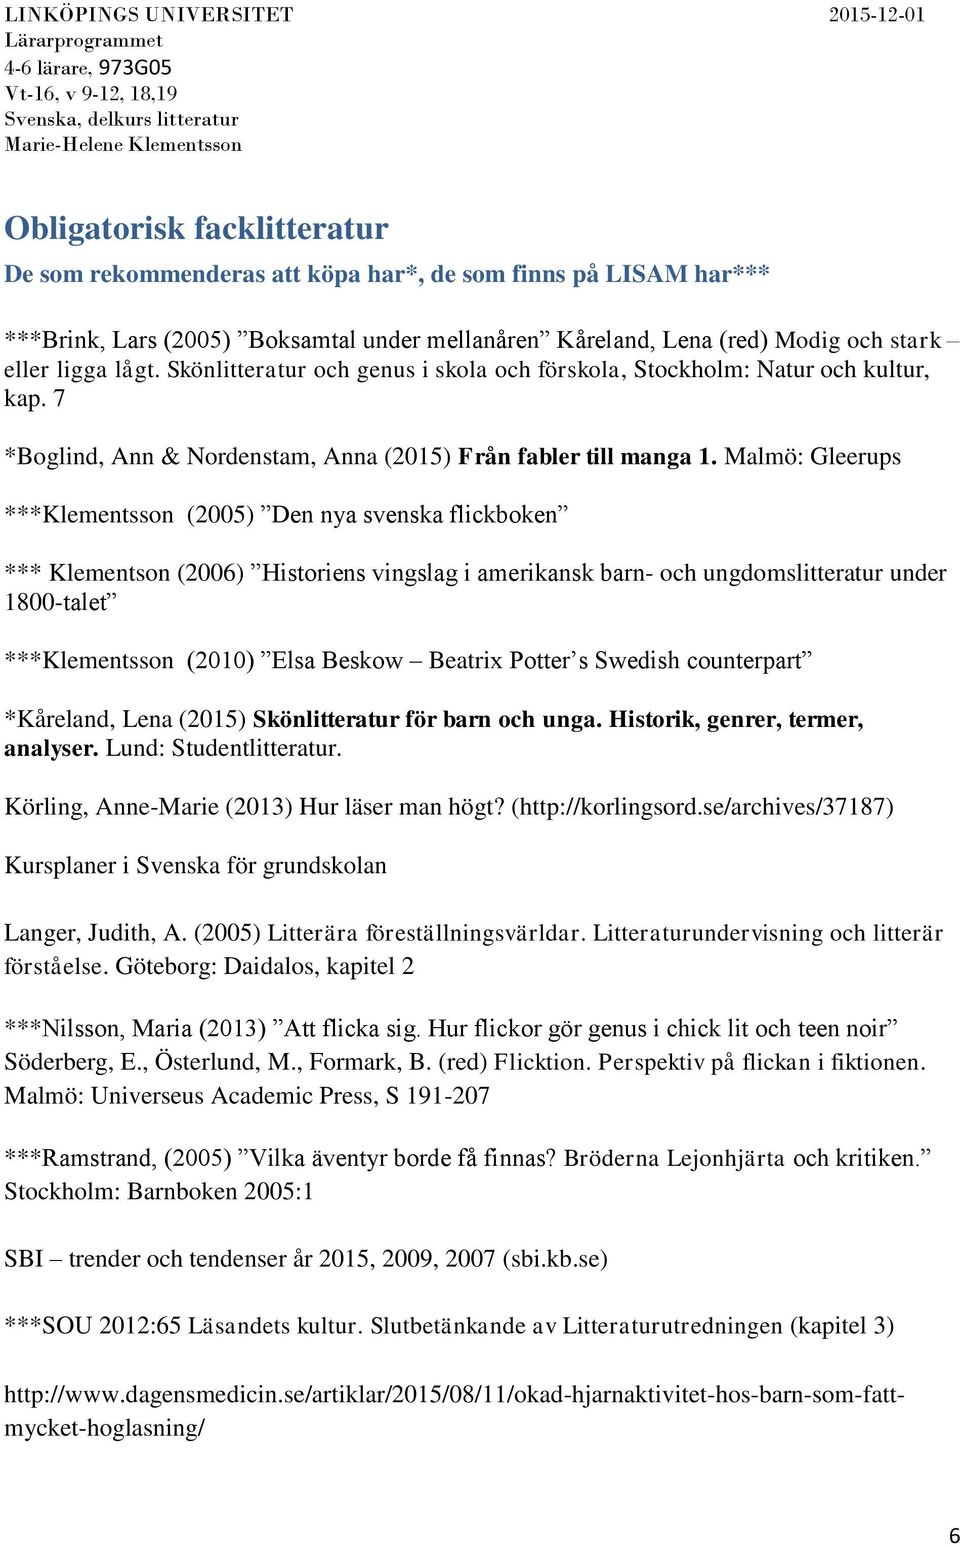 Malmö: Gleerups ***Klementsson (2005) Den nya svenska flickboken *** Klementson (2006) Historiens vingslag i amerikansk barn- och ungdomslitteratur under 1800-talet ***Klementsson (2010) Elsa Beskow